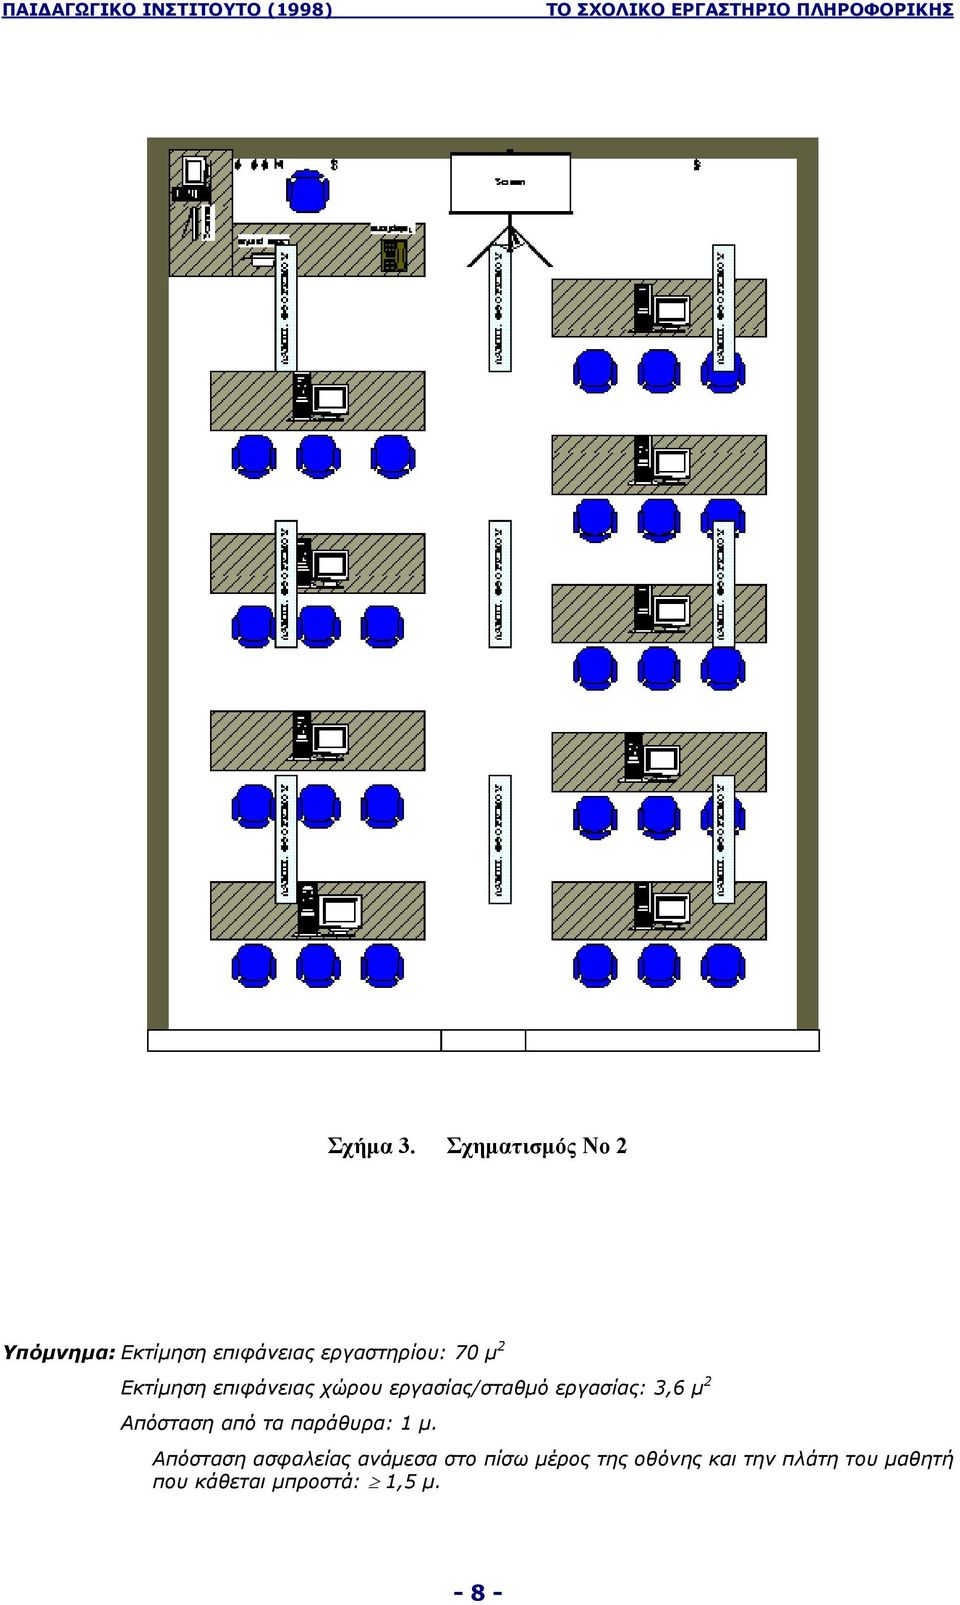 Εκτίµηση επιφάνειας χώρου εργασίας/σταθµό εργασίας: 3,6 µ 2 Απόσταση